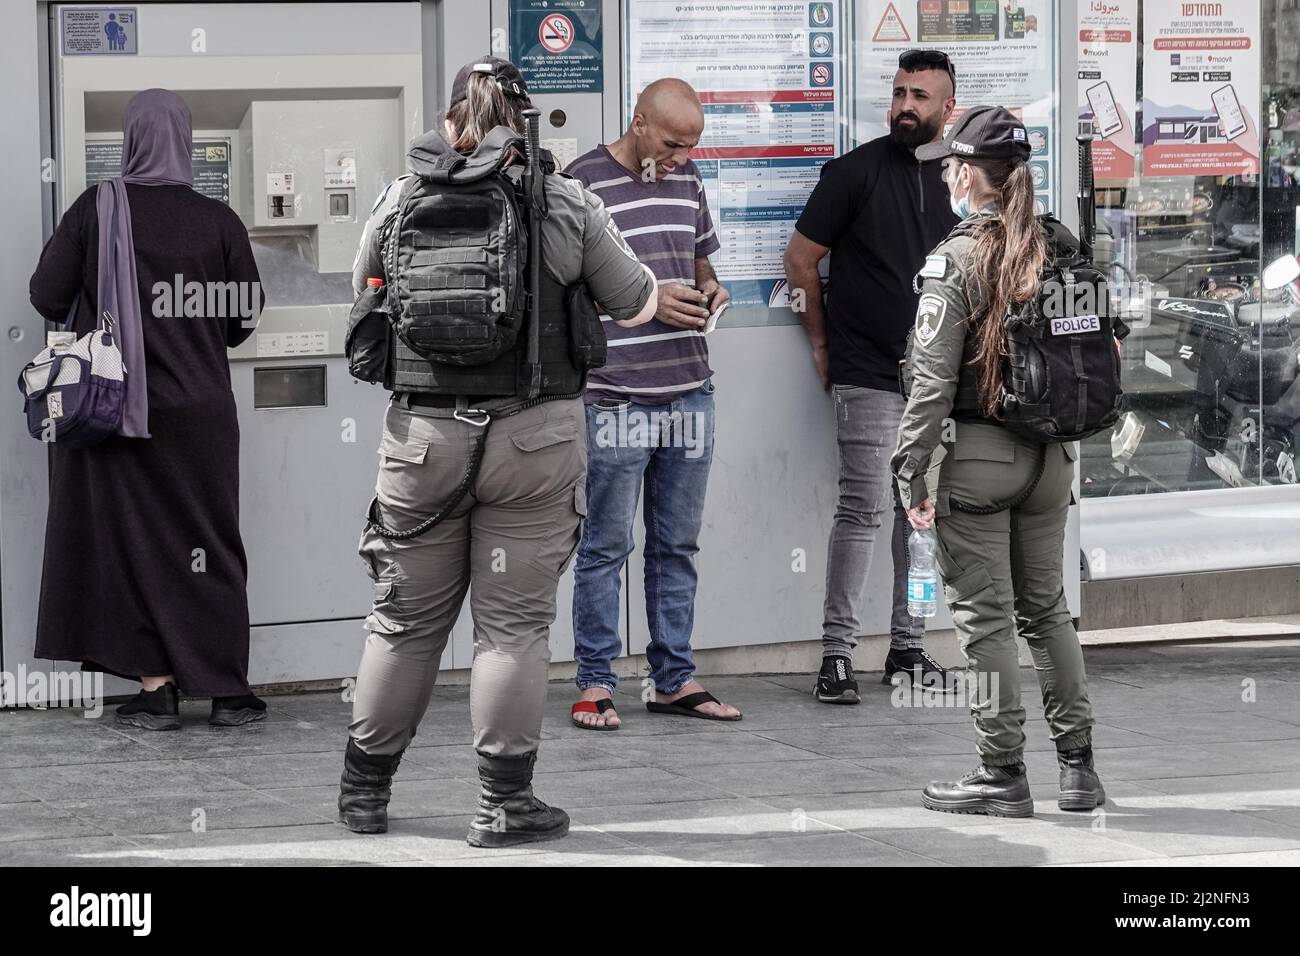 Jerusalén, Israel. 3rd de Abr de 2022. Los soldados de las FDI patrullan las calles del mercado de Shuk Mahane Yehuda, reforzando a la policía israelí en zonas urbanas abarrotadas durante el mes musulmán de Ramadán. En apenas las últimas dos semanas, un aumento repentino de los ataques terroristas árabes en ciudades israelíes y en Cisjordania ha herido a 20 y se ha cobrado la vida de 11, elevando las medidas de seguridad en lo que las FDI titulaban Operación Breaker de Ondas. Crédito: NIR Alon/Alamy Live News Foto de stock